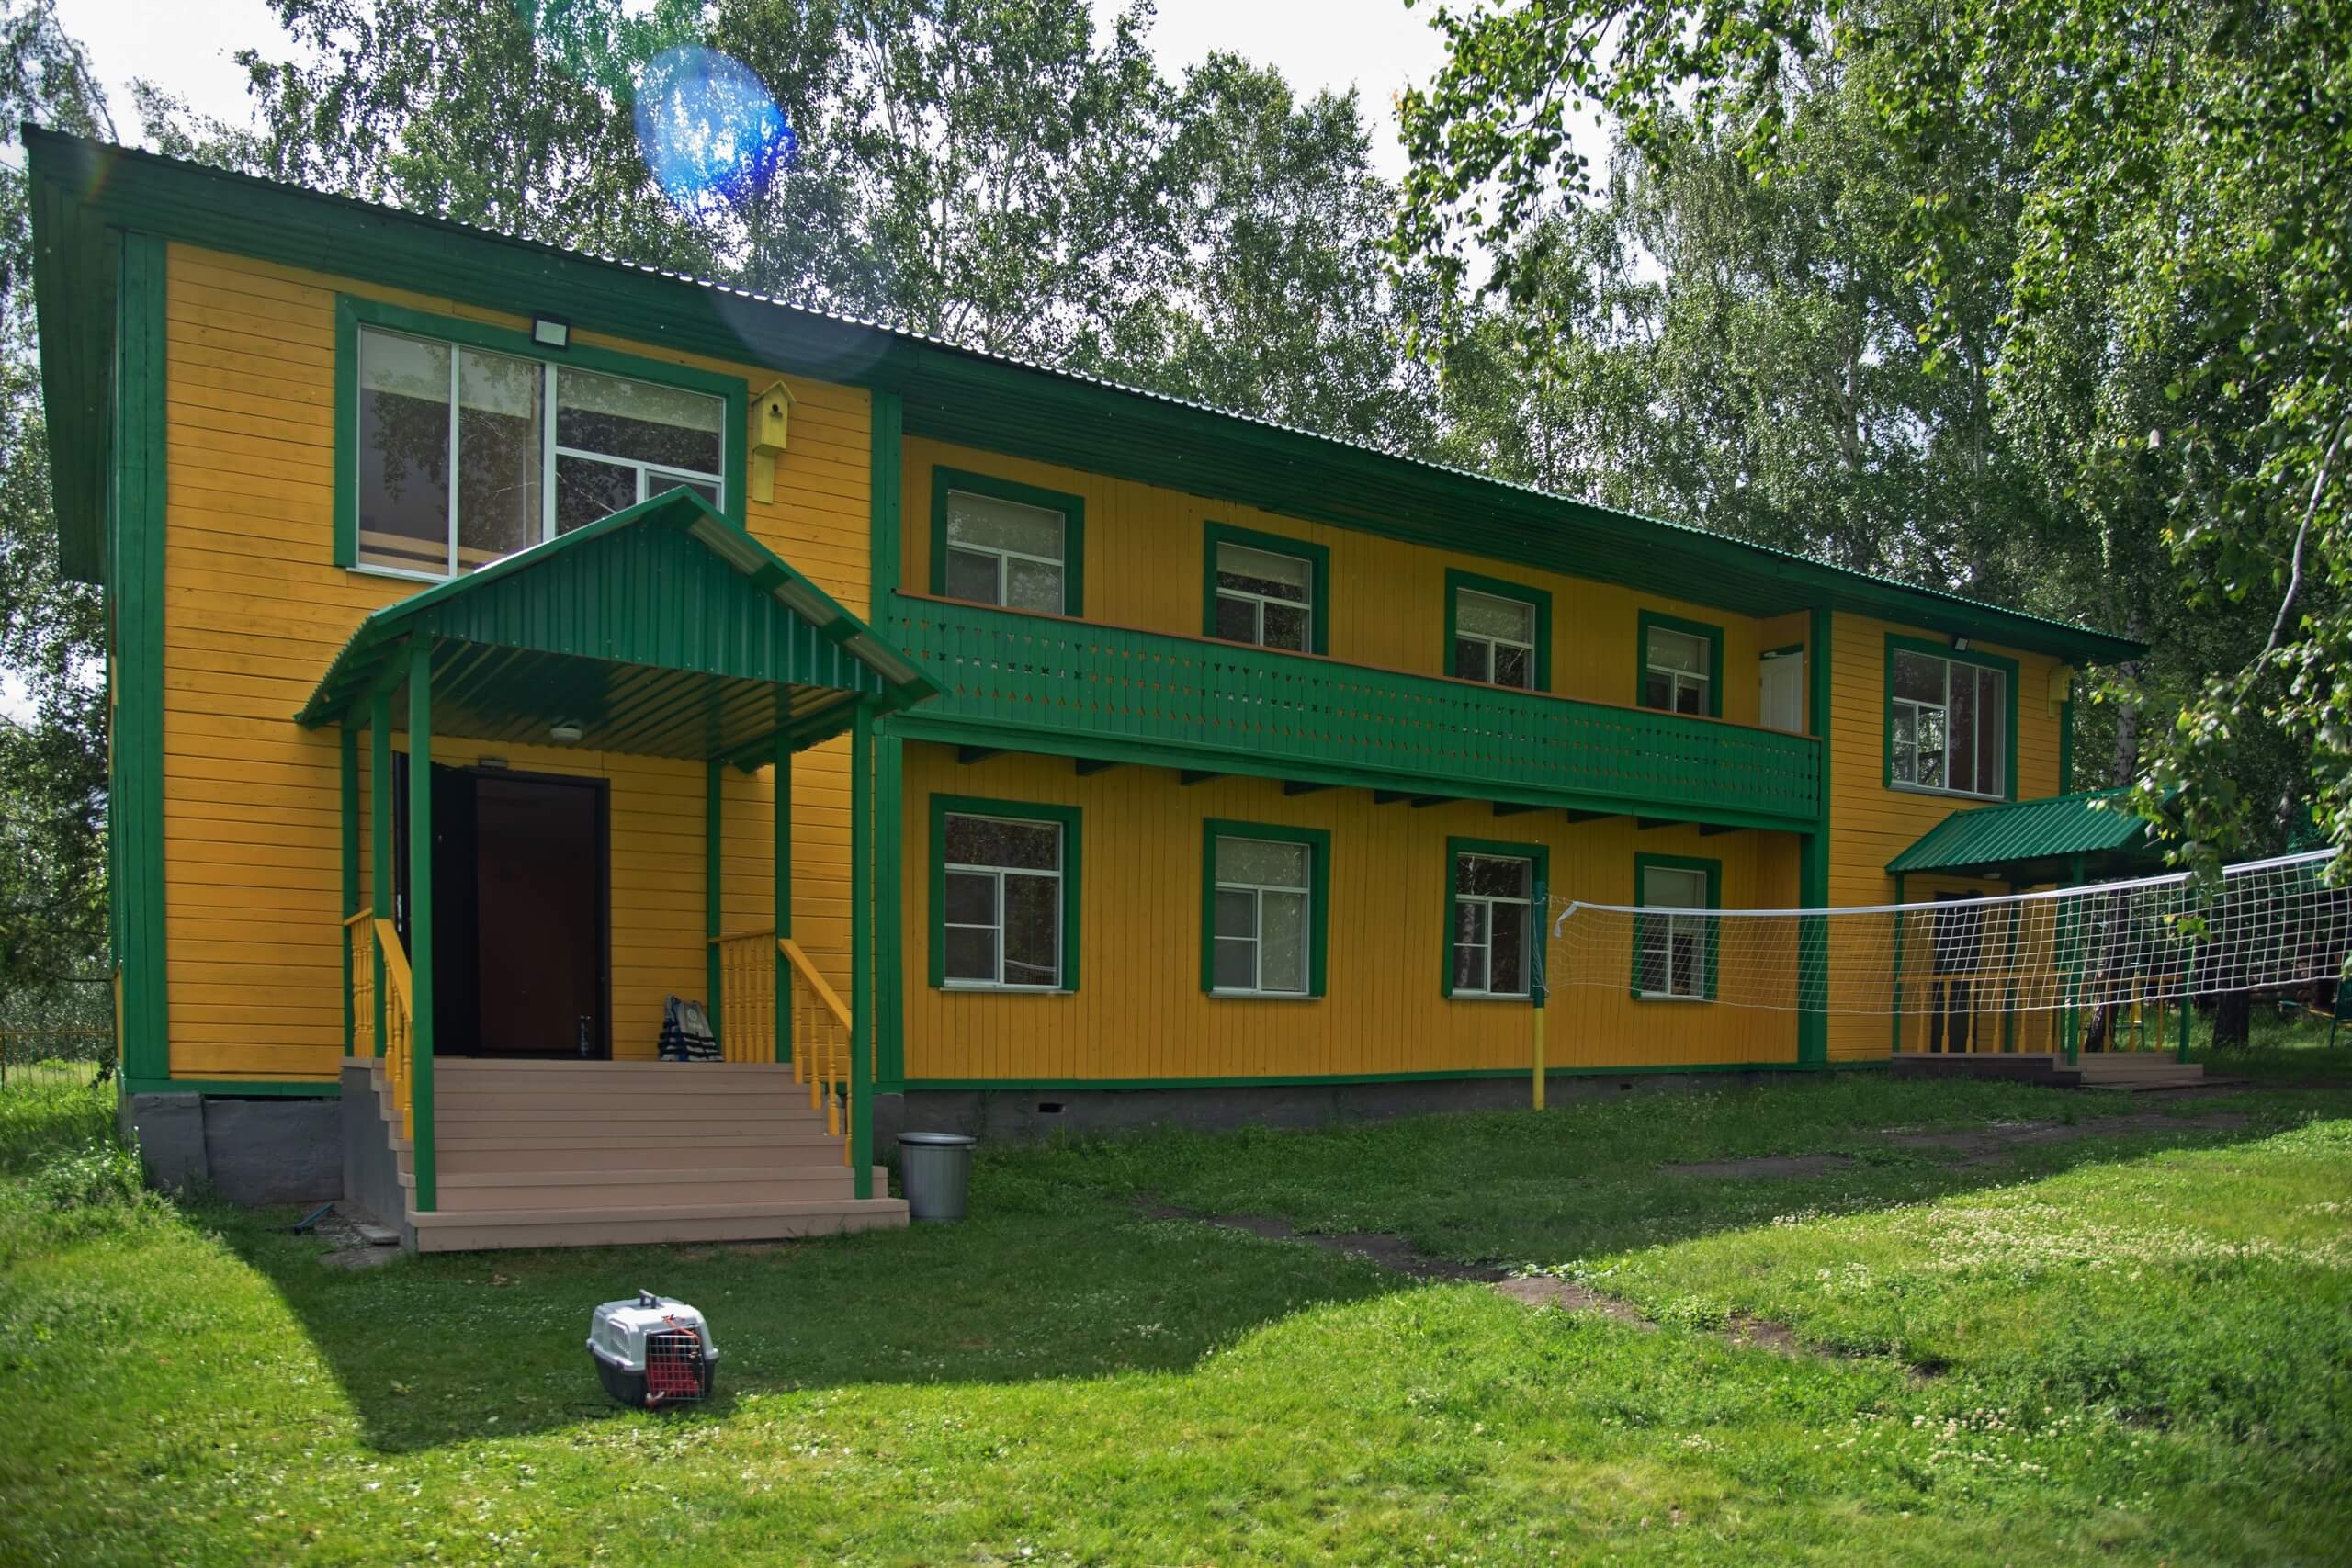 Фасад гостевого дома выкрашен в яркие желтый и зеленый цвета.